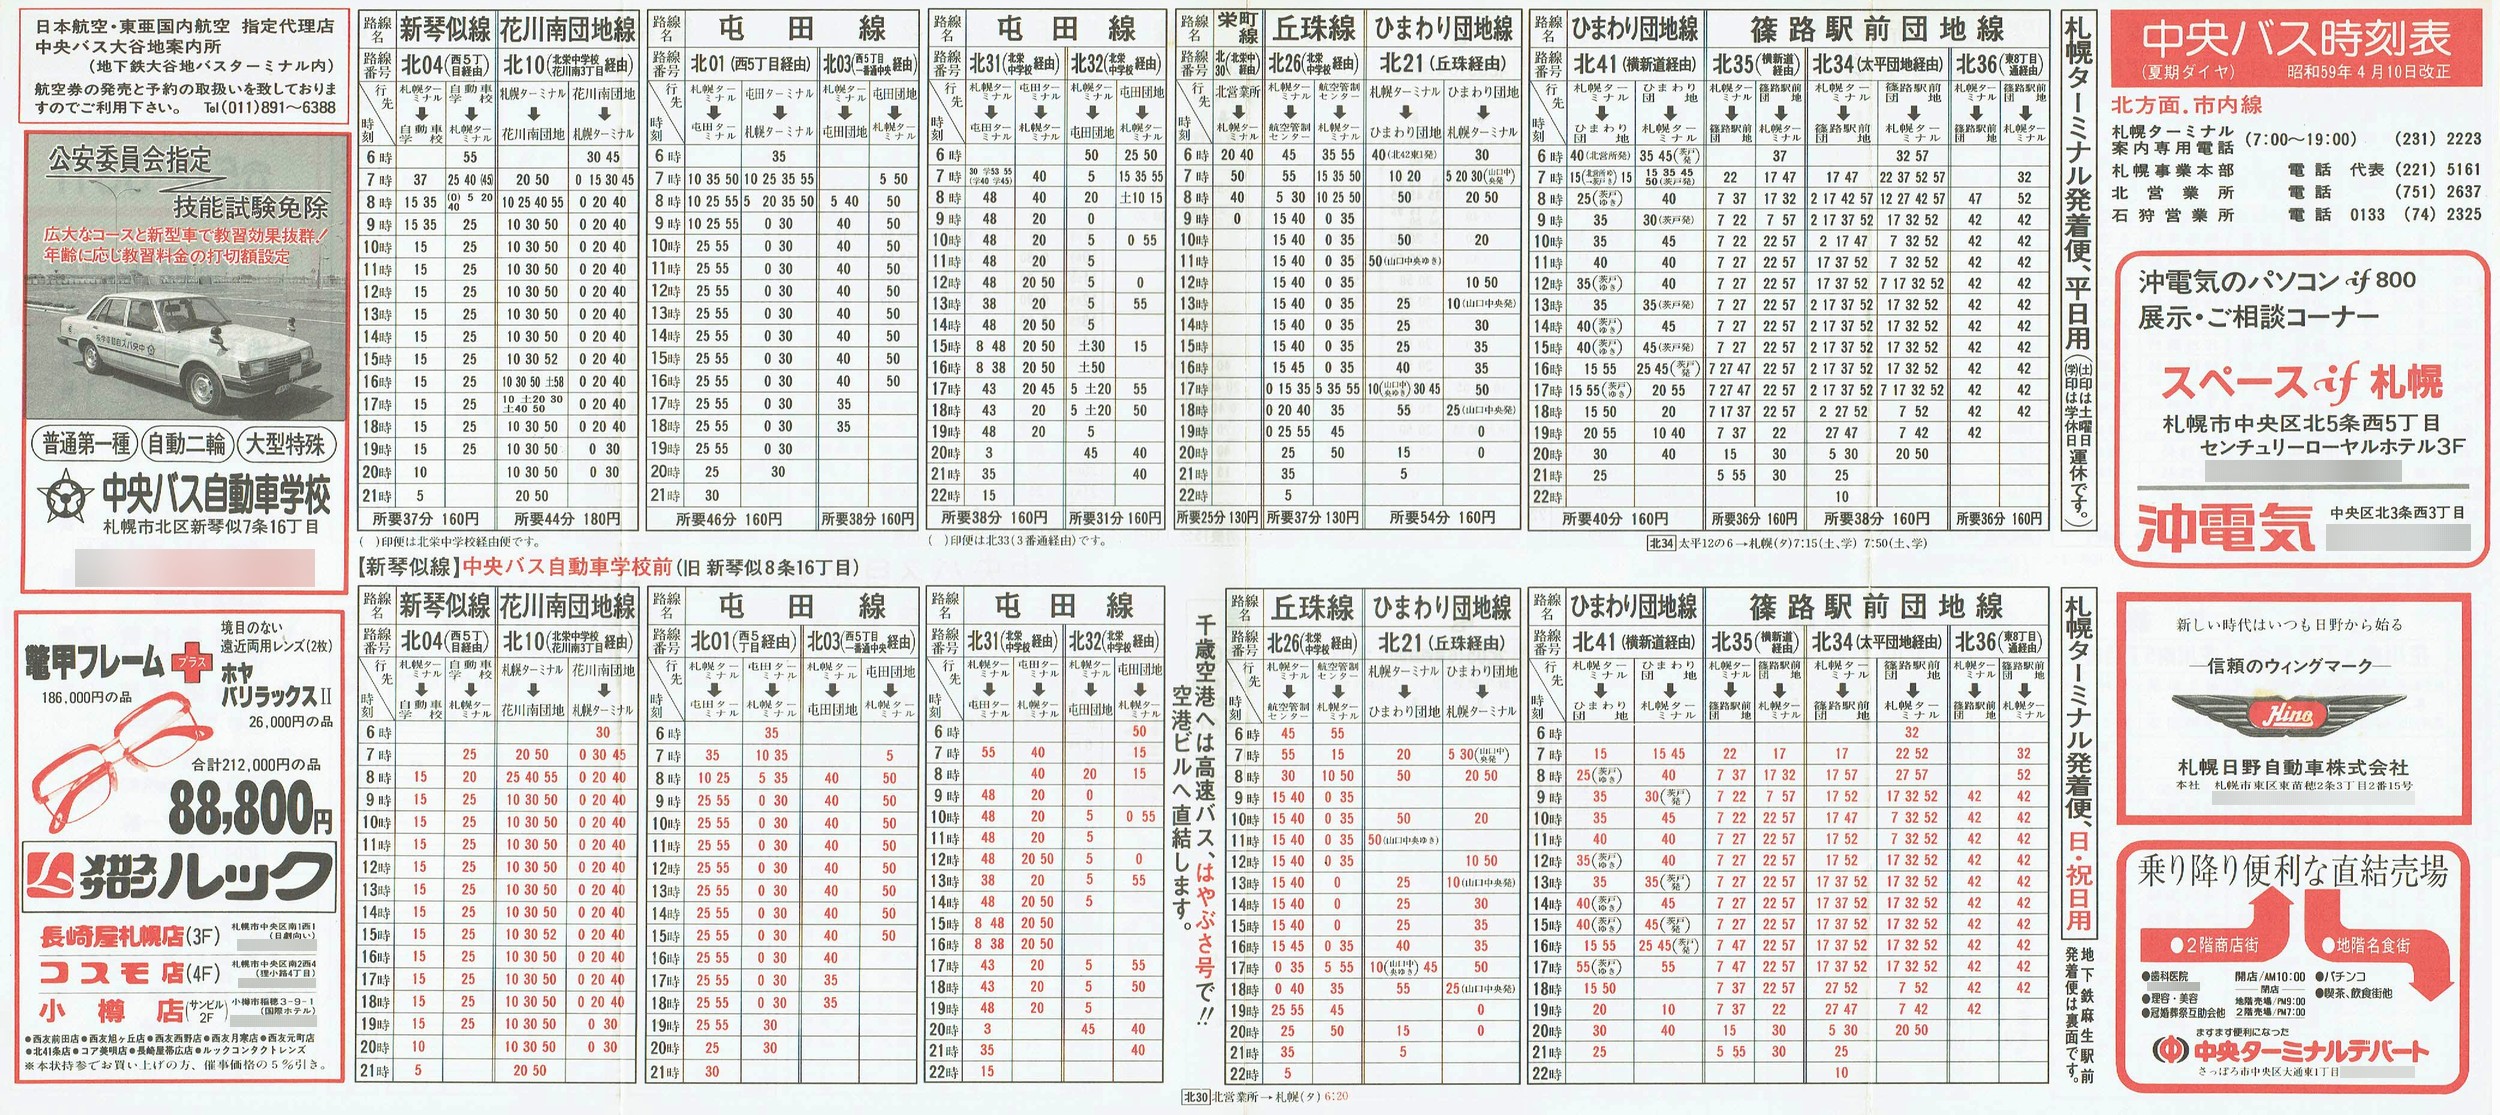 1984-04-10改正_北海道中央バス(札幌)_札幌市内線北方面時刻表表面